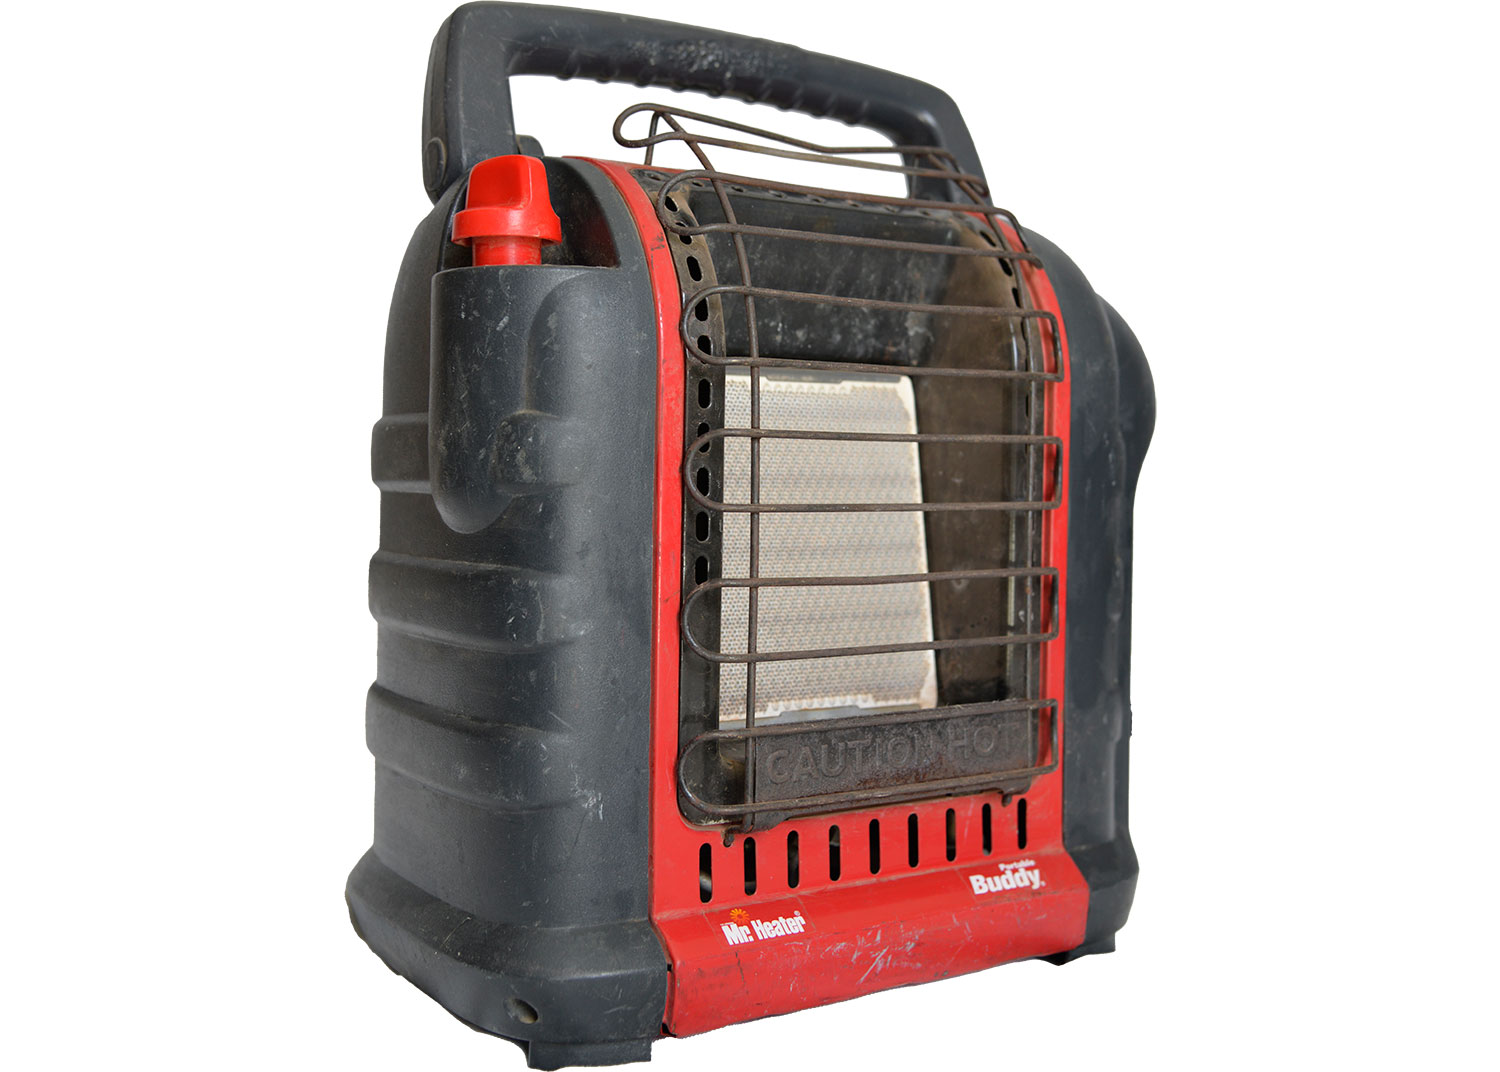 Example heater